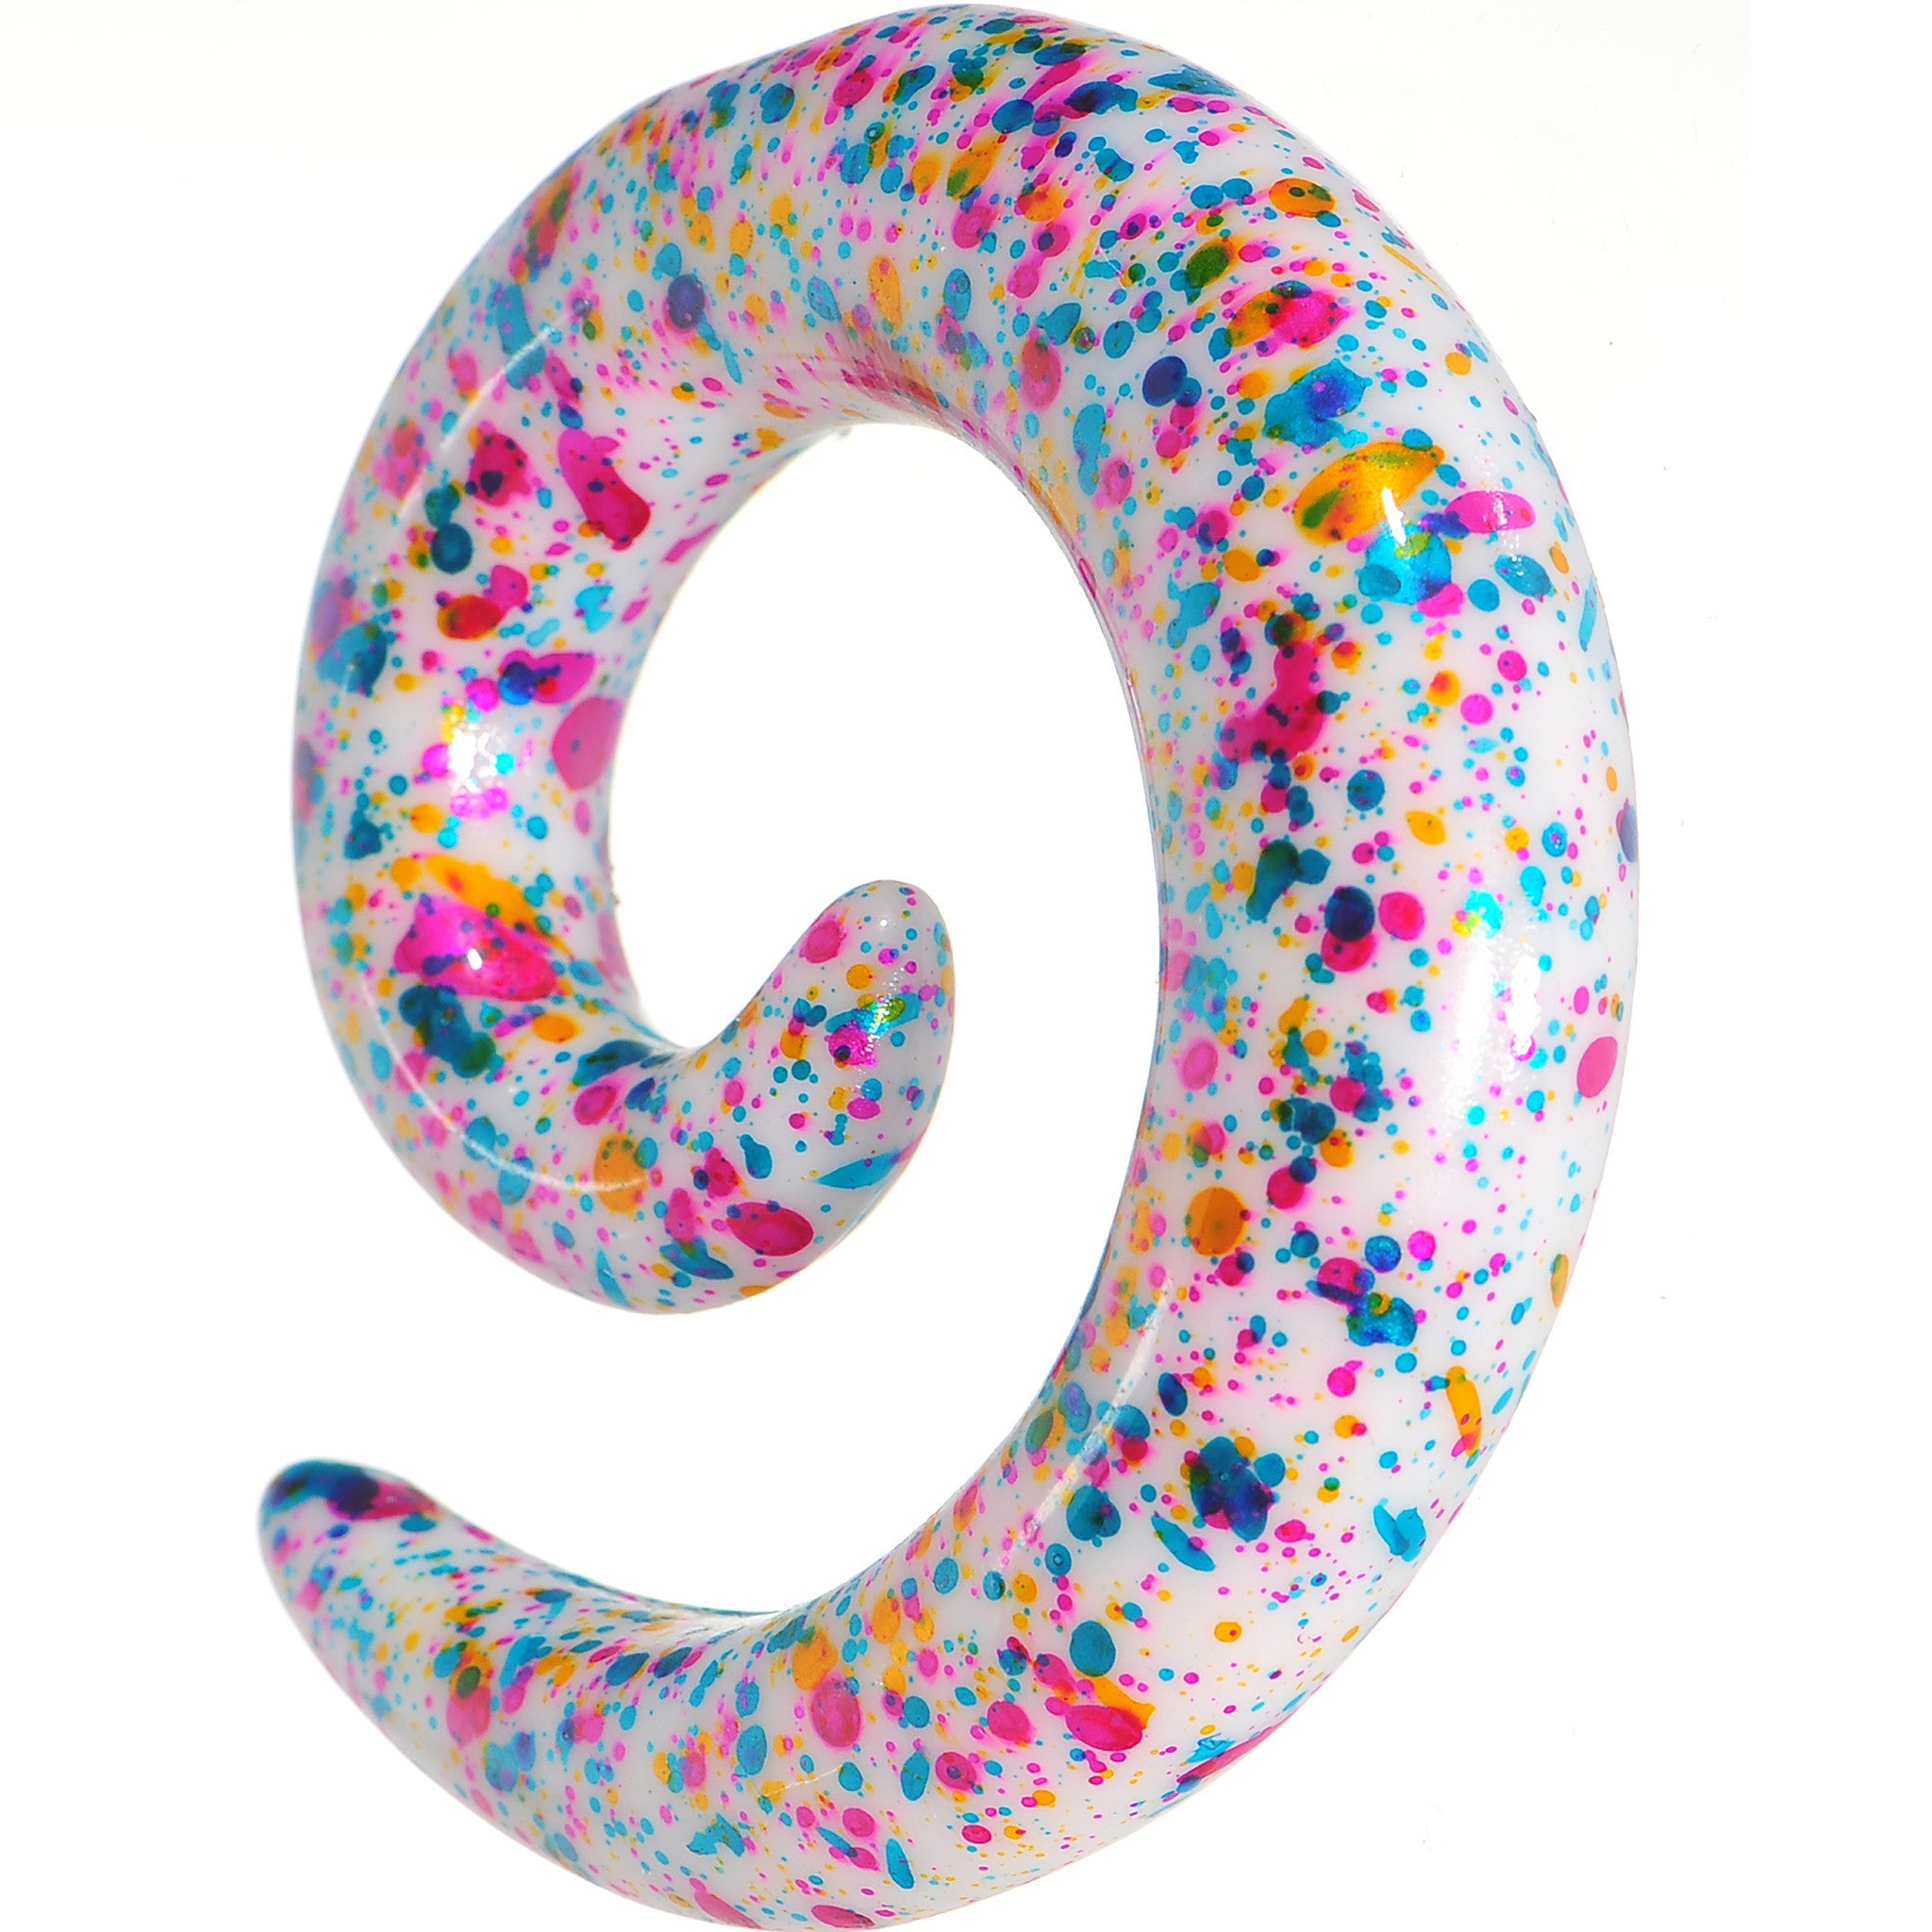 00 Gauge Acrylic Rainbow Bubblegum Spatter Spiral Taper